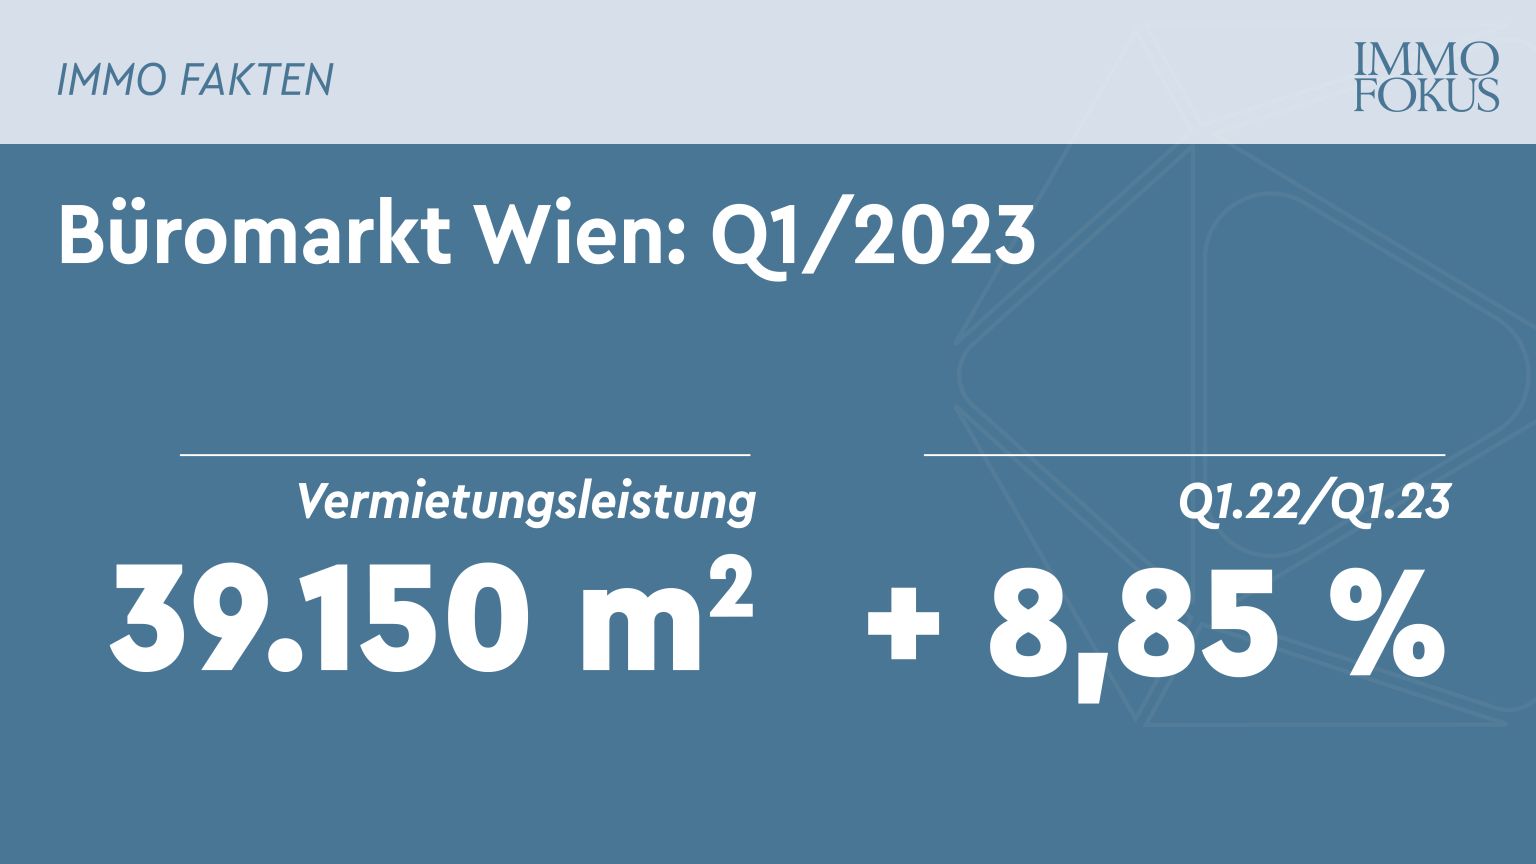 Büromarkt Wien: Leerstandsquote liegt bei 3,91%